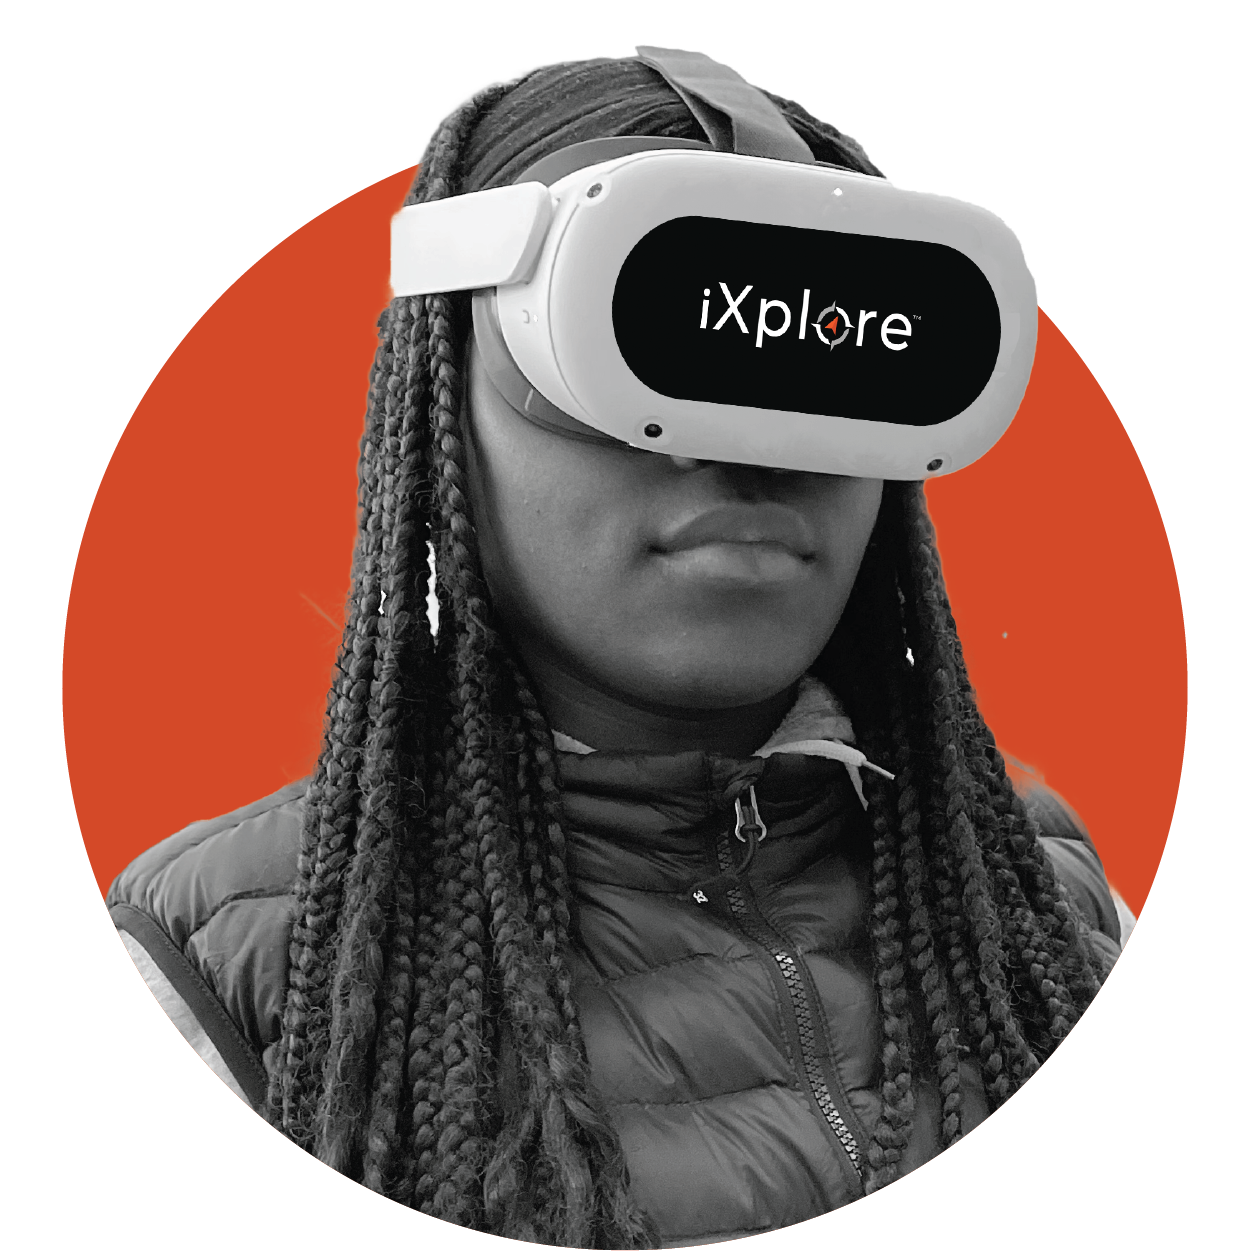 Student in iXplore Headset